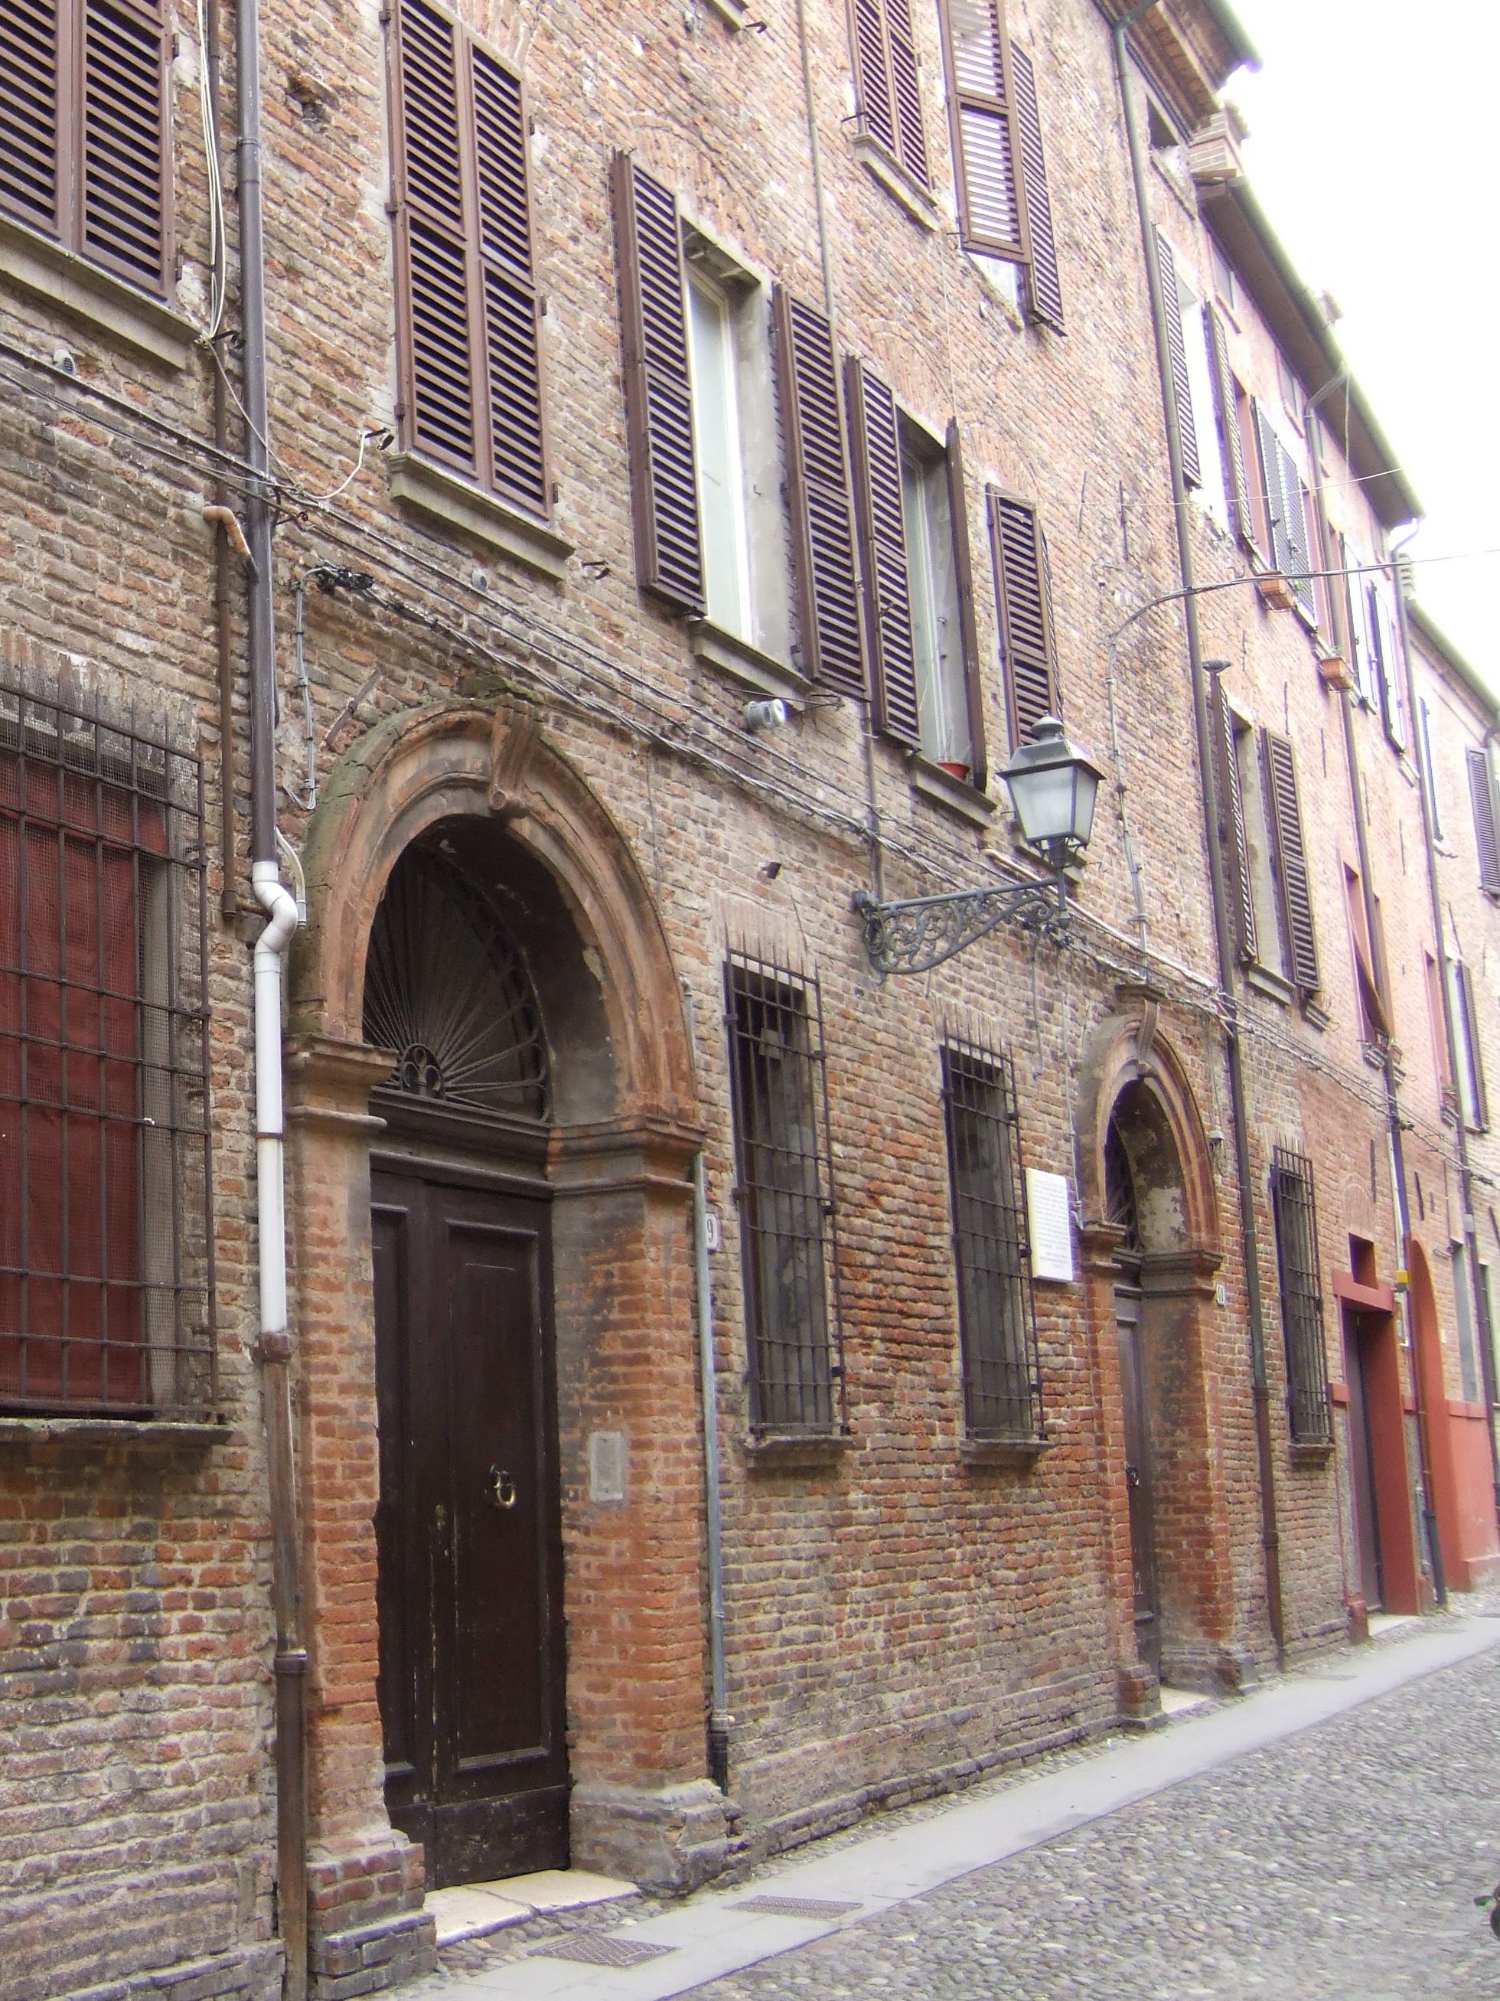 Spanish Synagogue of Ferrara